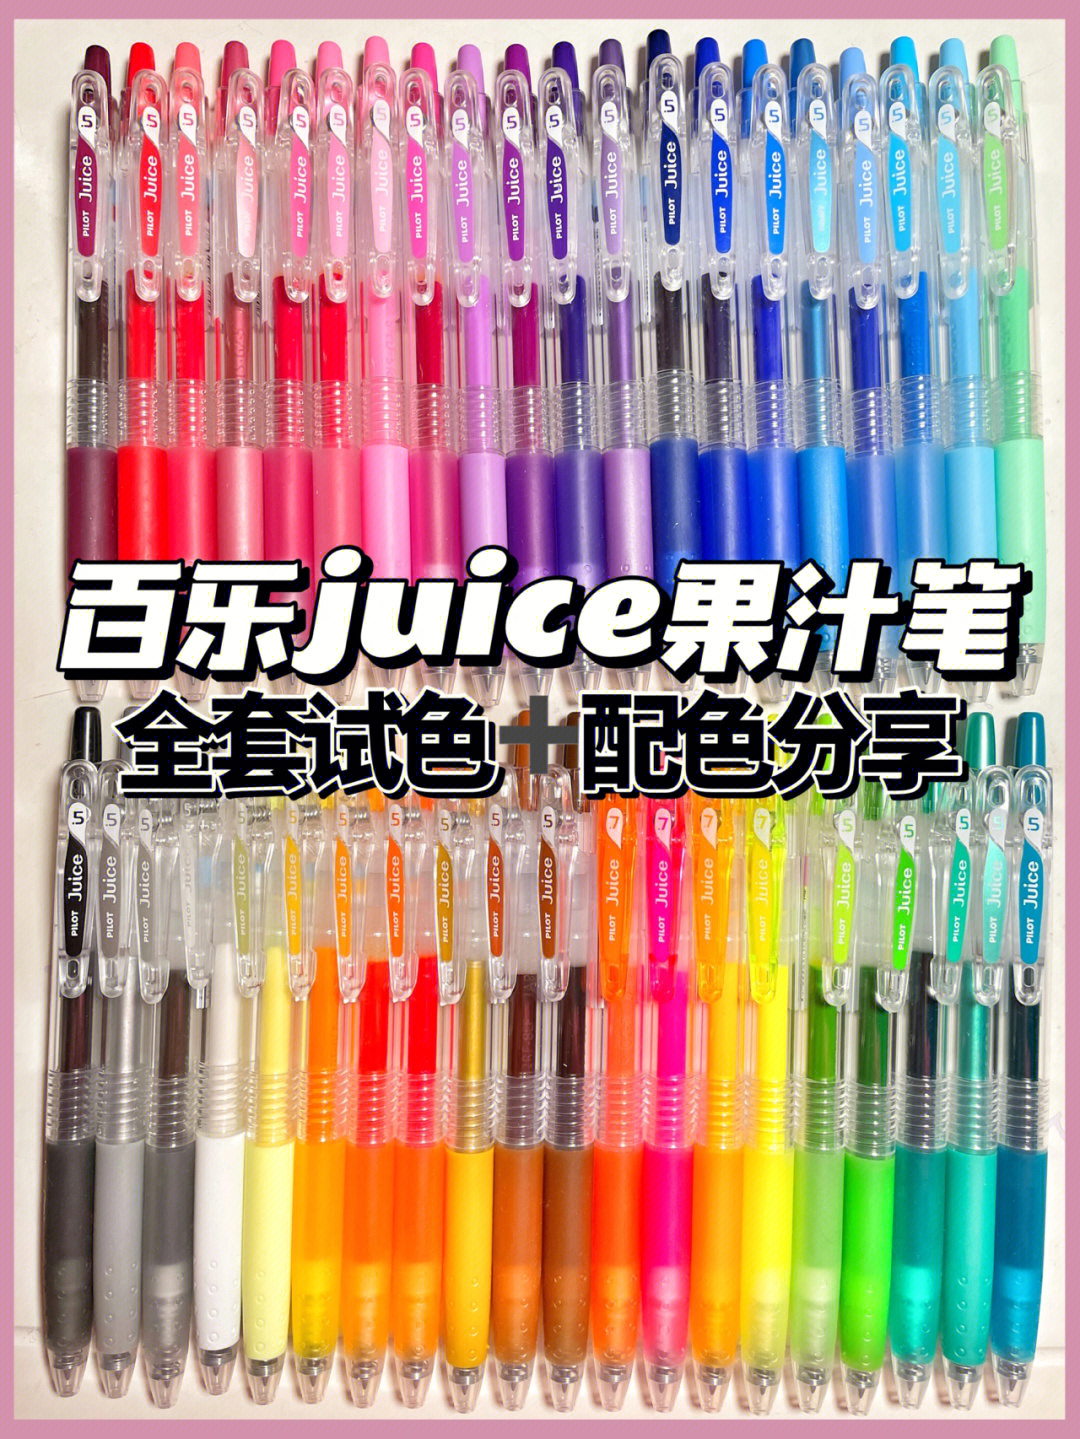 三菱umn105和百乐juice图片